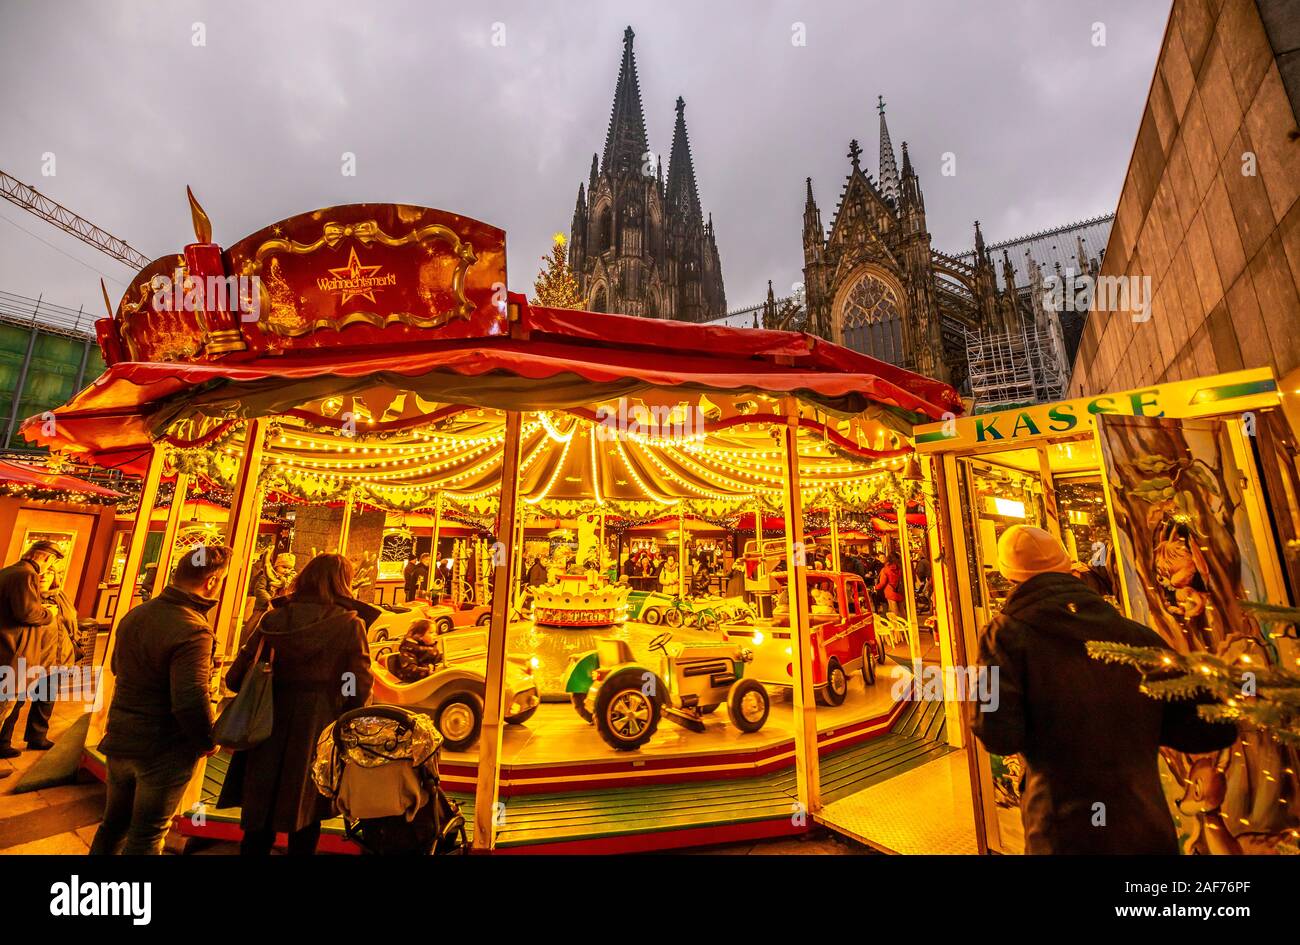 Colonia, mercatino di Natale sulla Roncallli Platz, direttamente presso la cattedrale di Colonia, i bambini della giostra, Foto Stock